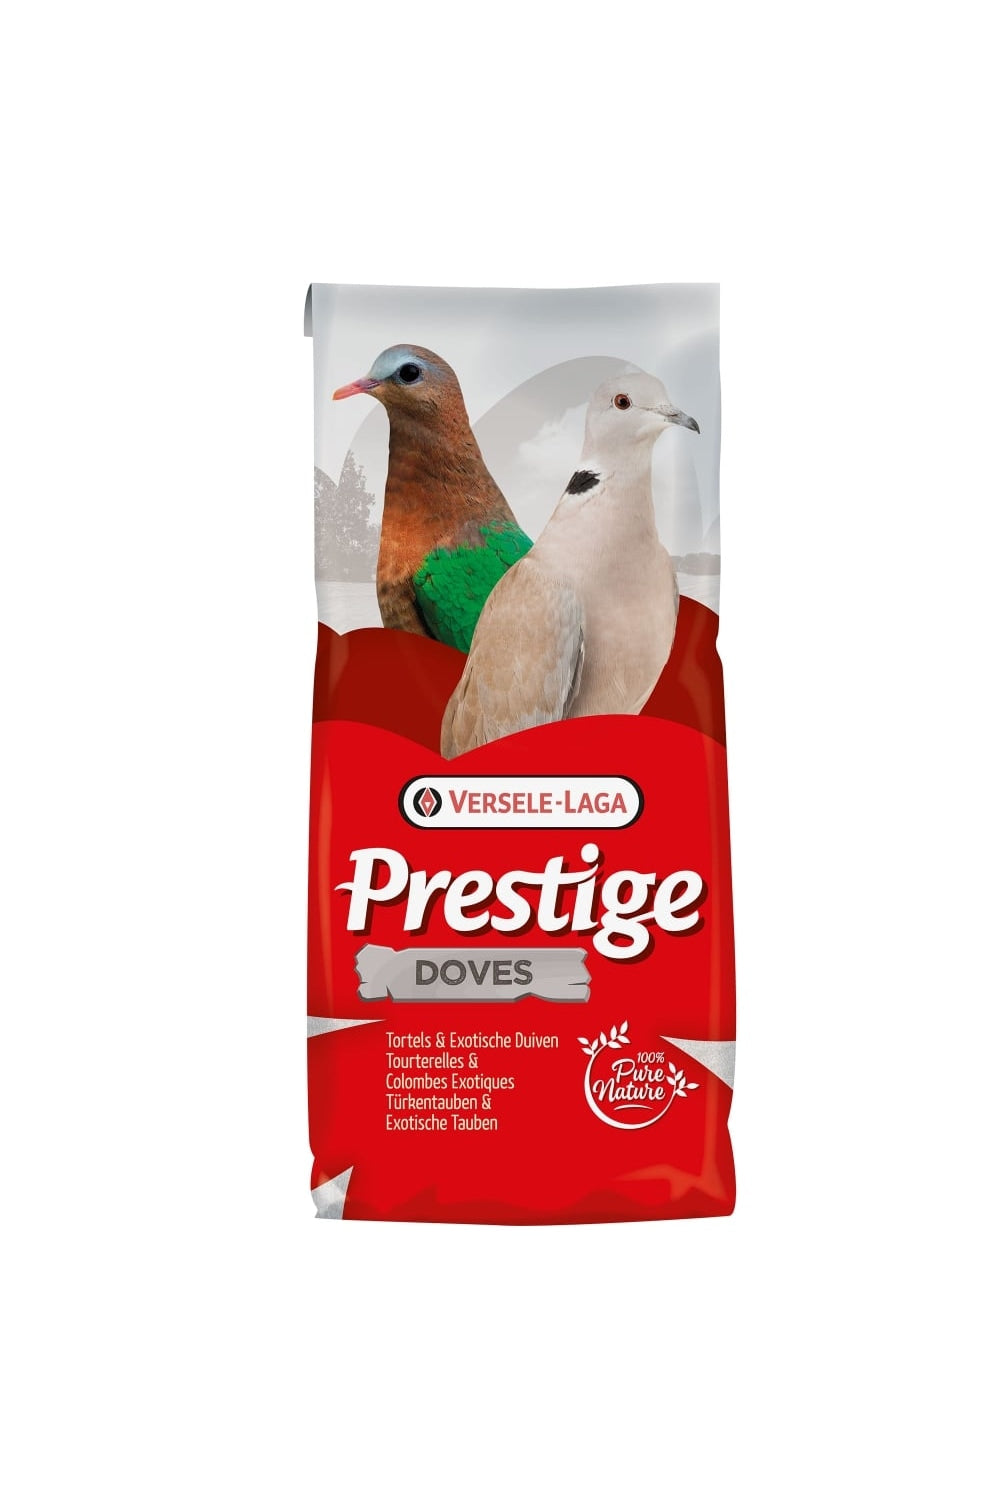 Versele Laga Prestige Turtle Doves Pigeon Food (May Vary) (8.8lbs)